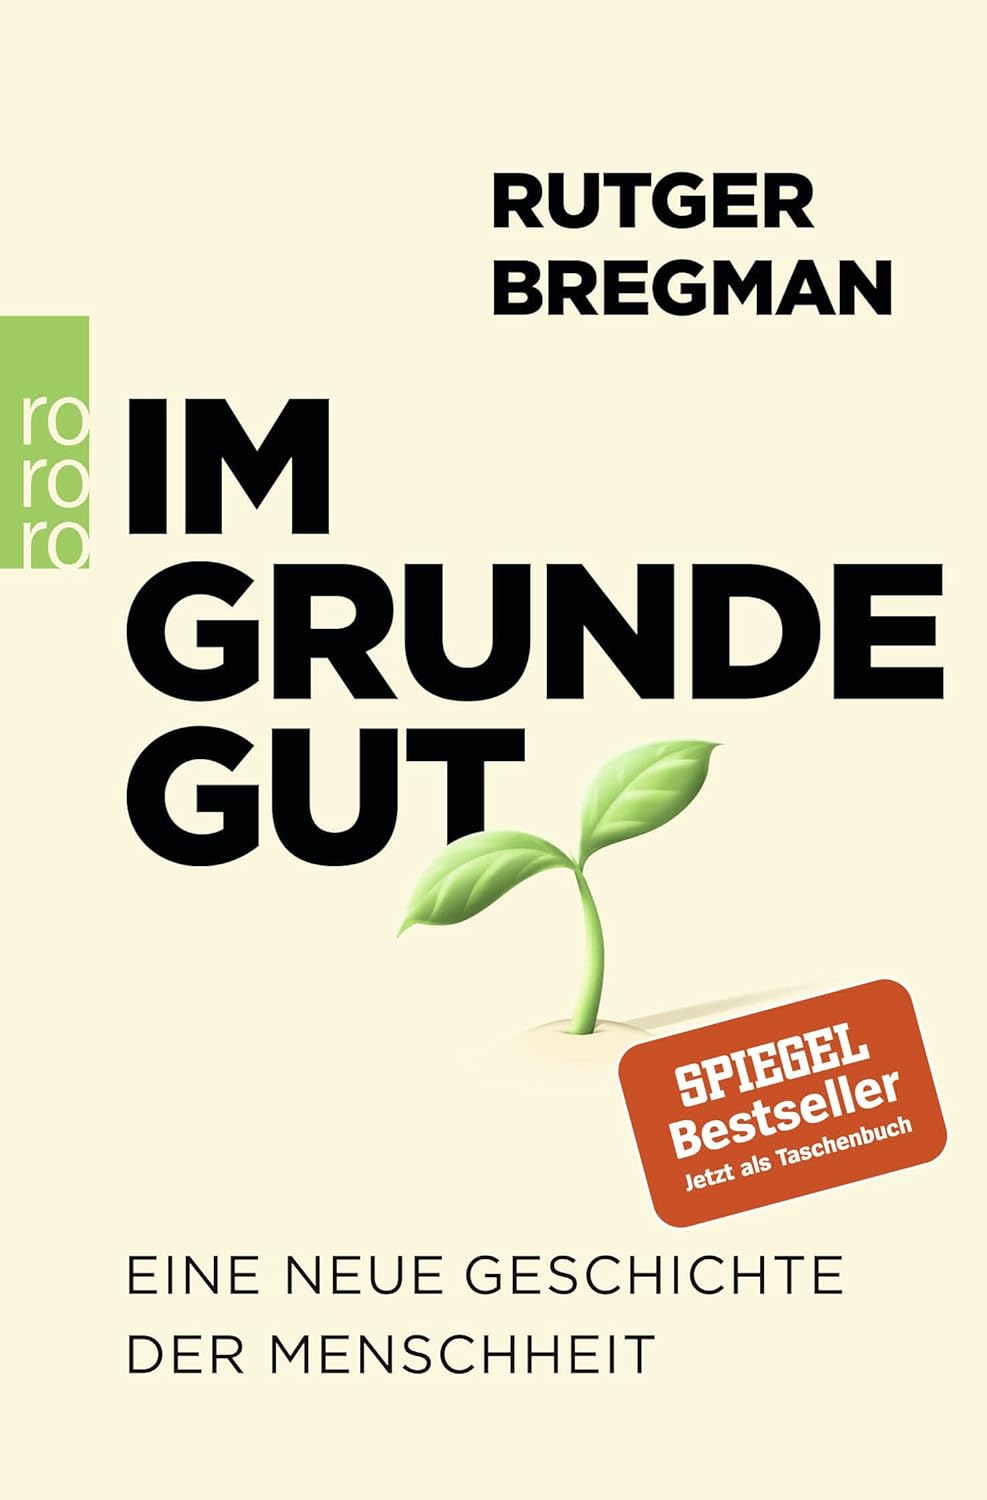 Rutger Bregman: Im Grunde gut. (Paperback, deutsch language, 2020, Rohwoldt Taschenbuch)